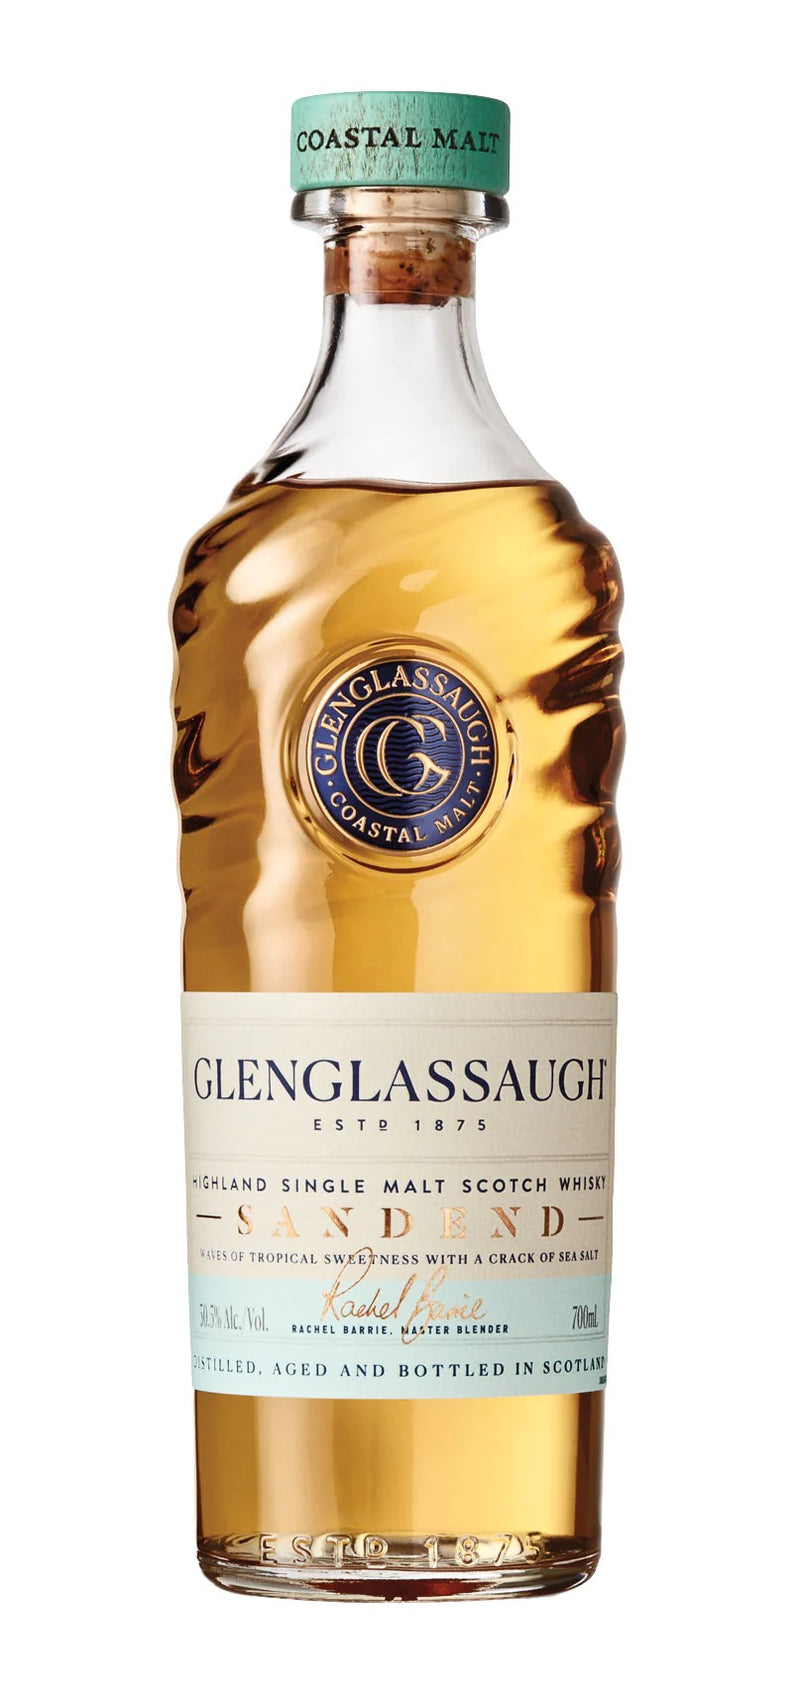 Glenglassaugh Sandend Single Malt Scotch Whisky /50,5%/ 0,7l